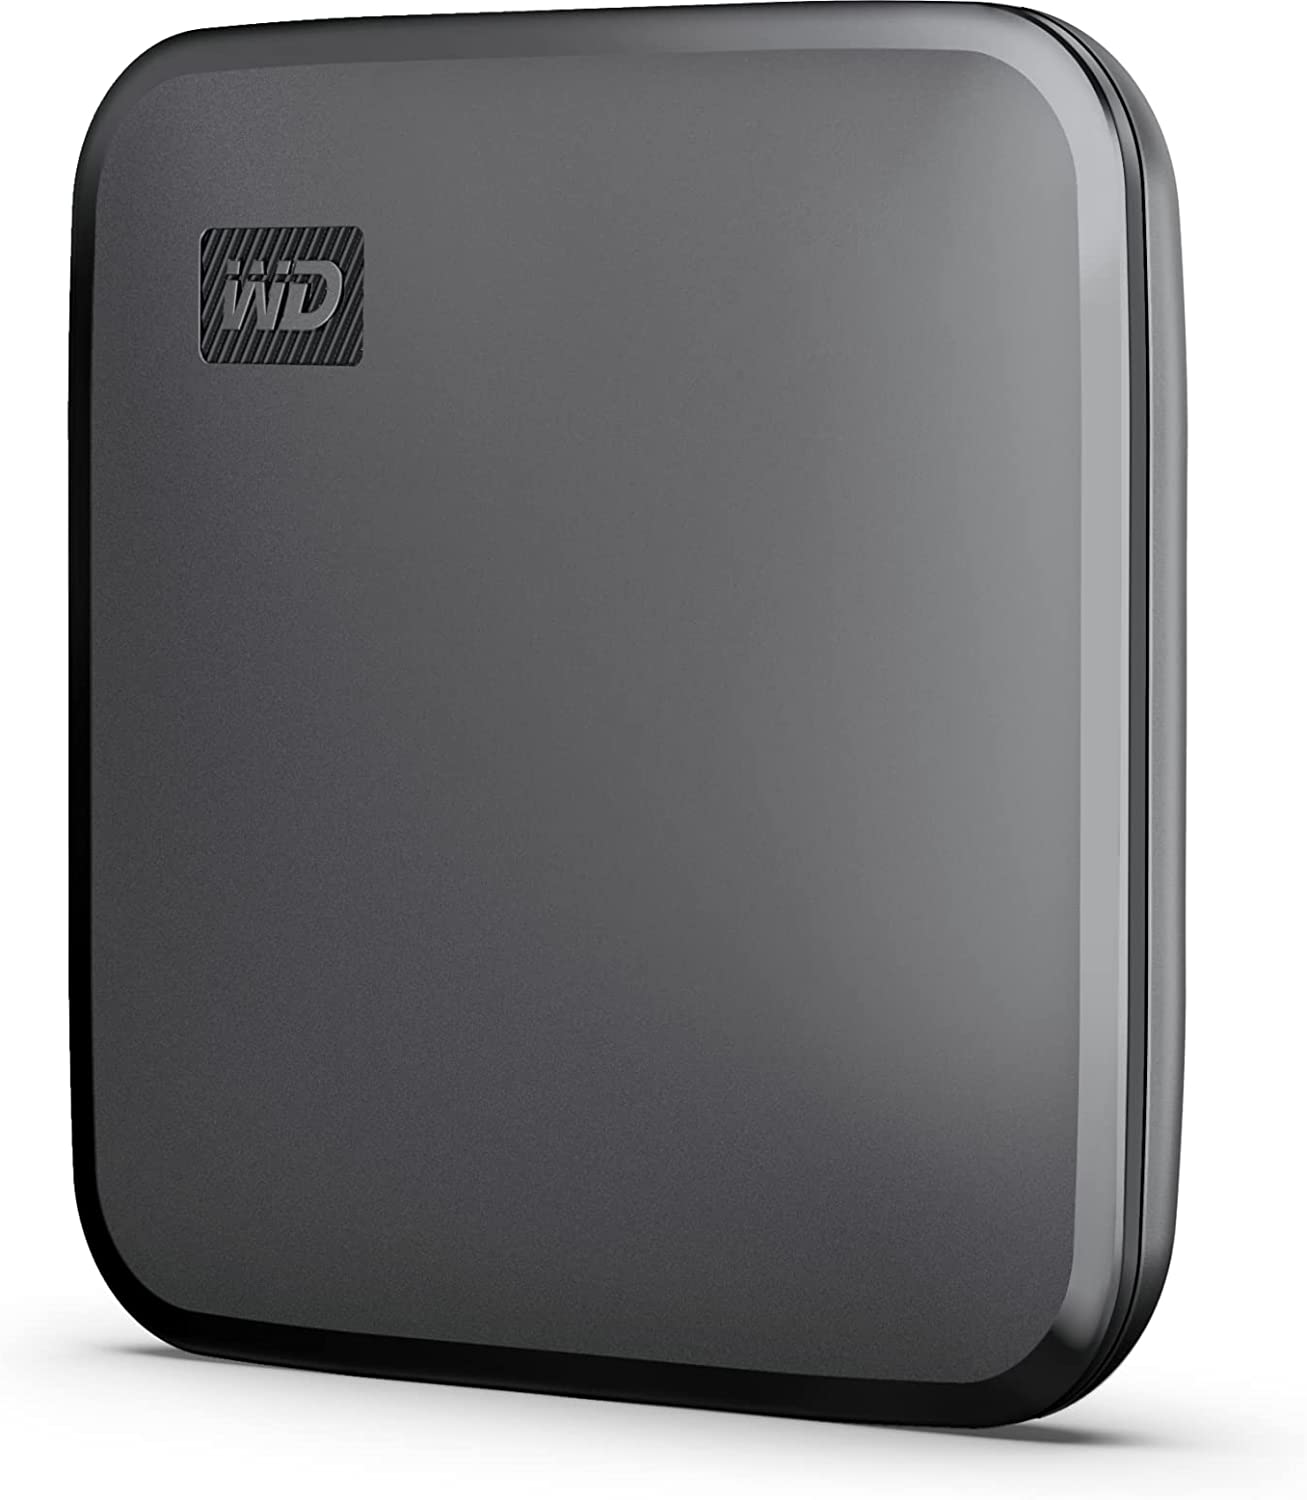 Sandisk Hard disk ssd western digital wd elements se 480gb